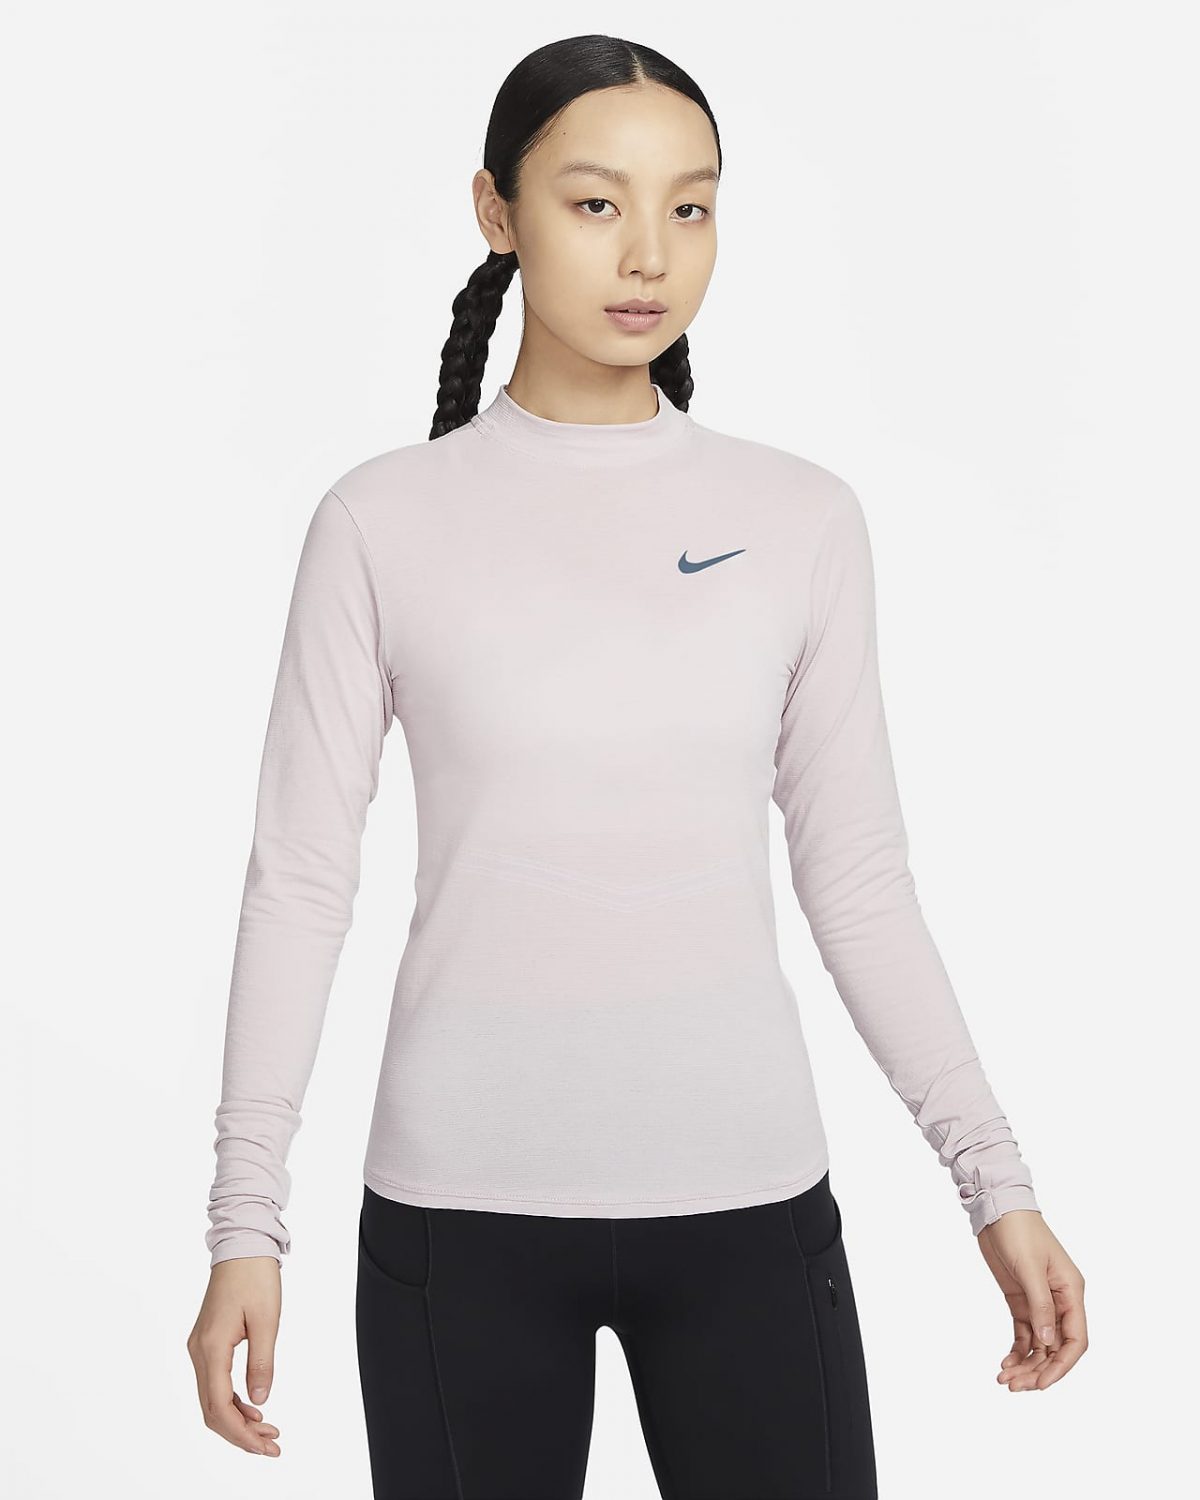 Женский топ Nike Swift фото